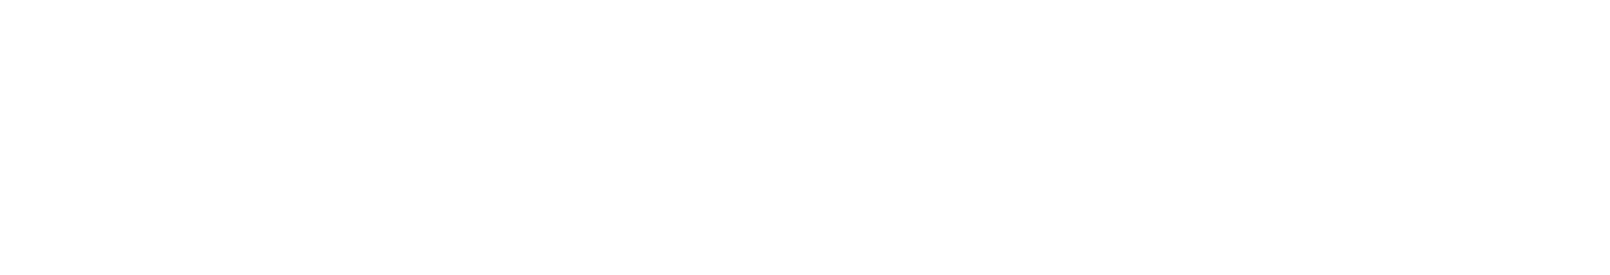 CarCheck | KFZ Gutachten